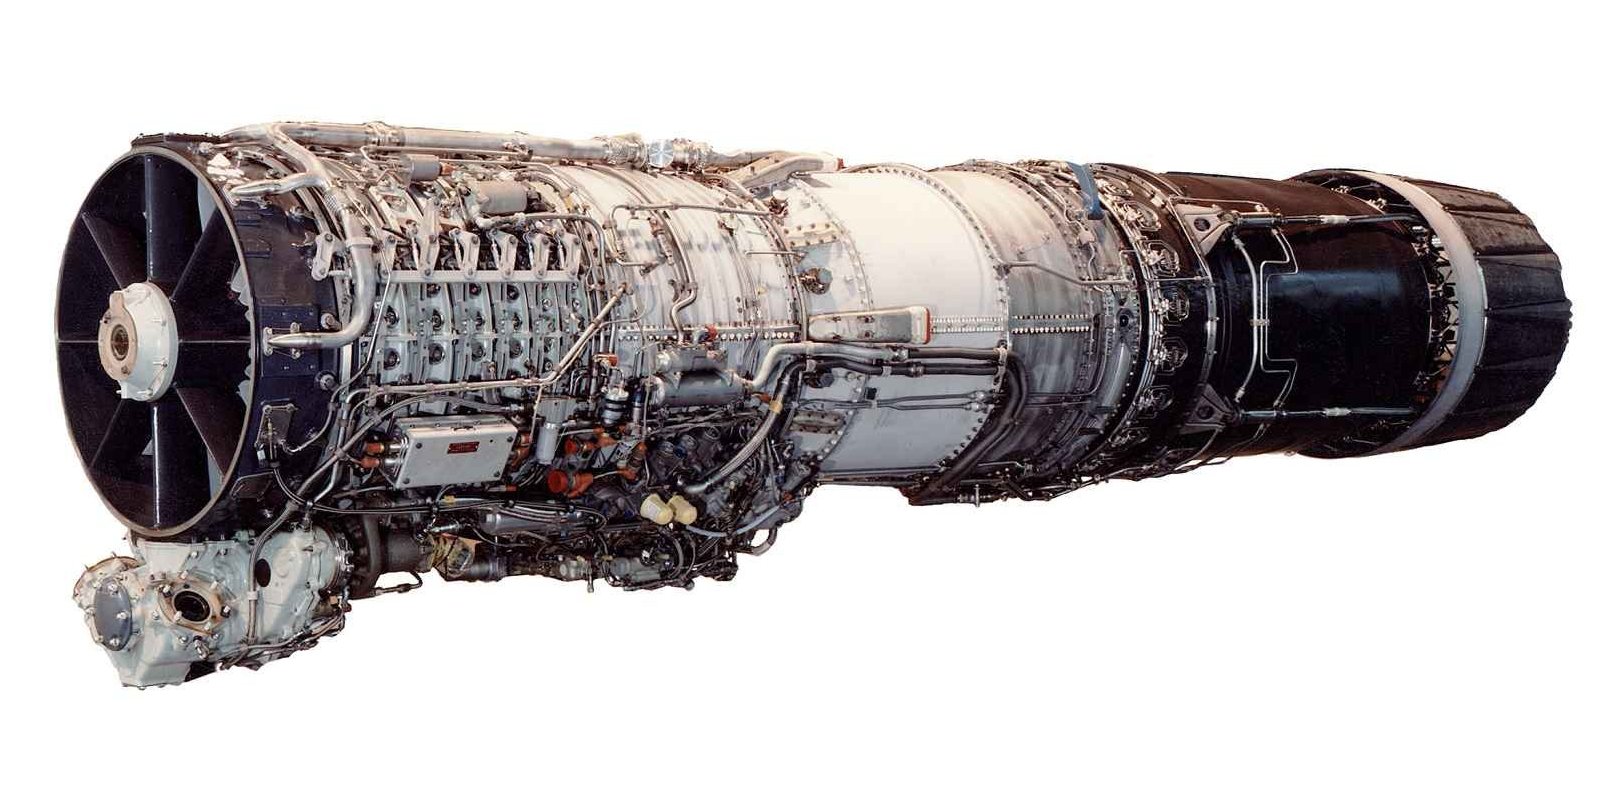 GE J79-17 Engine